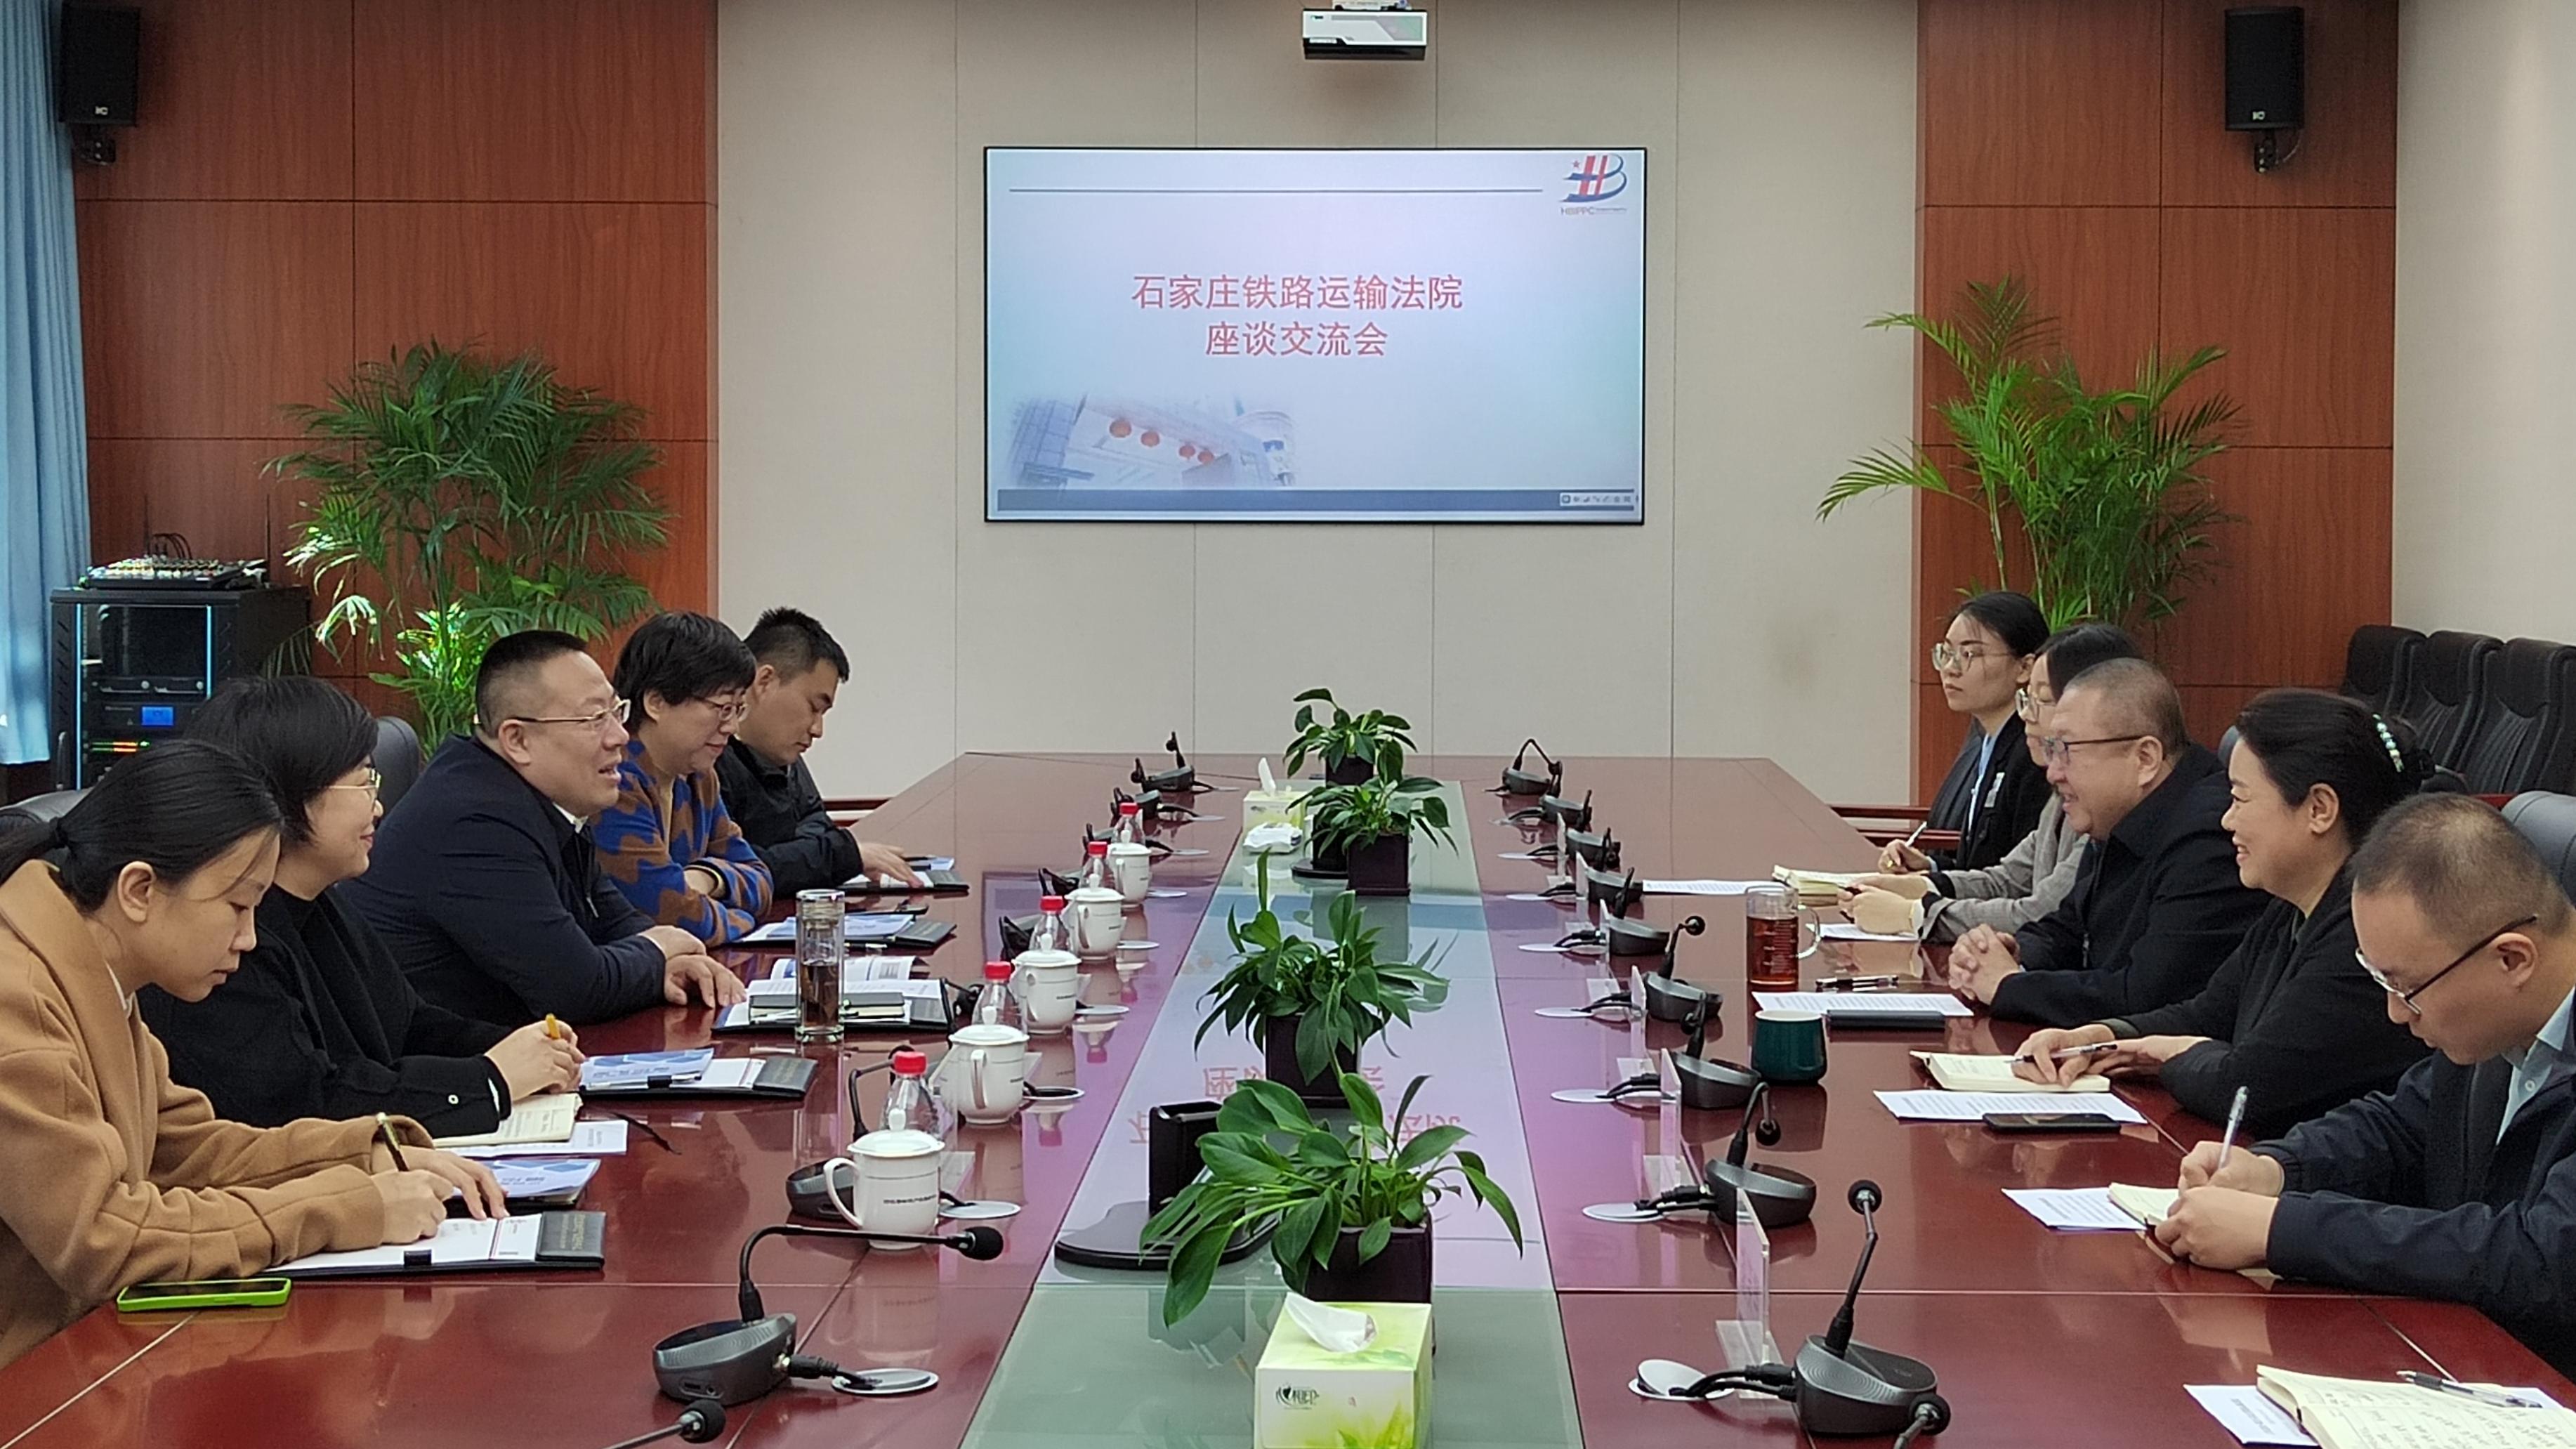 石家庄铁路运输法院到河北省知识产权保护中心调研交流